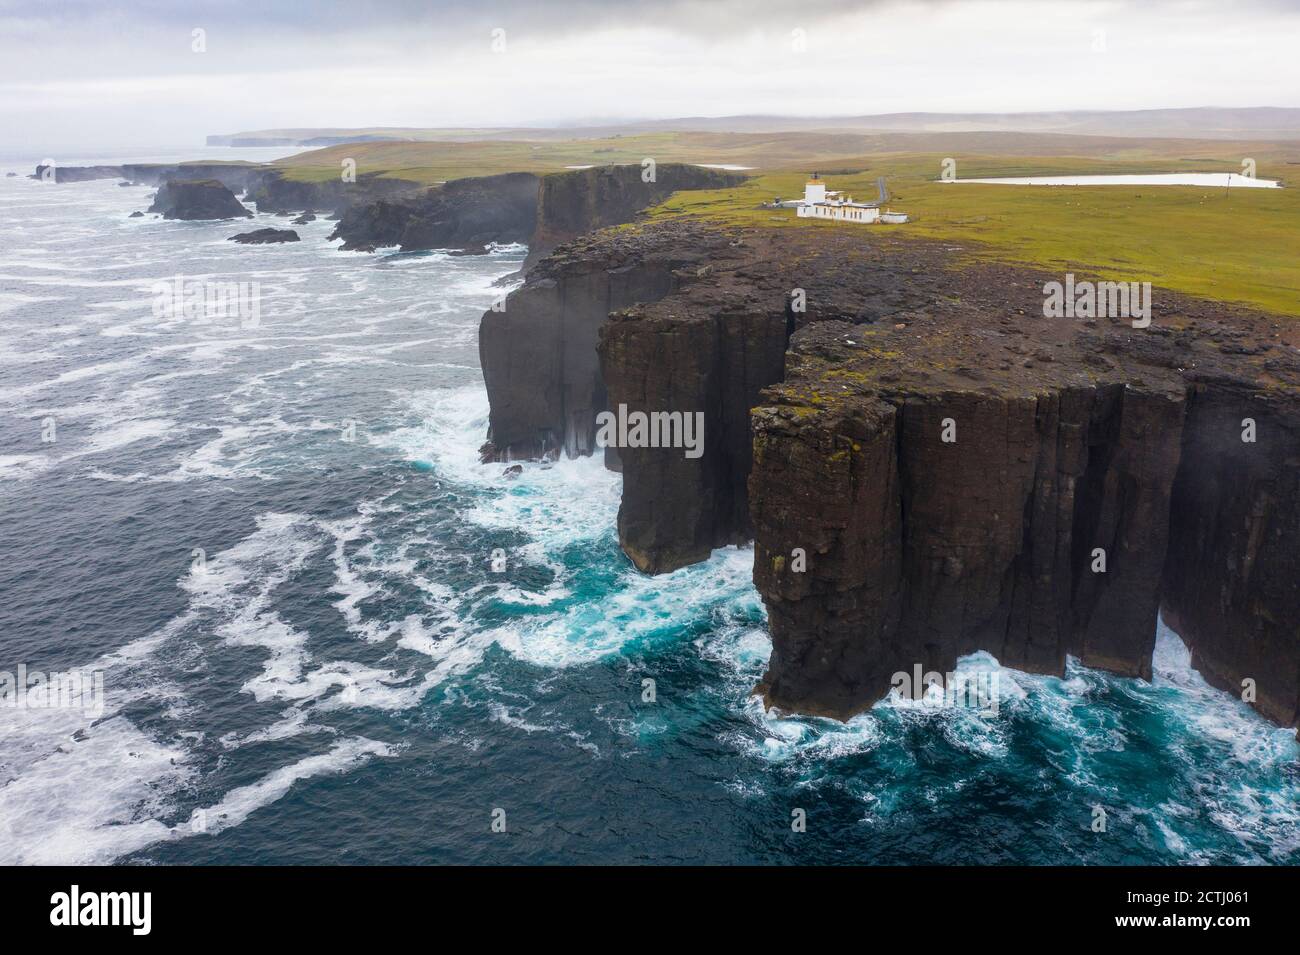 Spettacolari scogliere e faro sulla costa di Eshaness a Northmavine , terraferma settentrionale delle isole Shetland, Scozia, Regno Unito Foto Stock